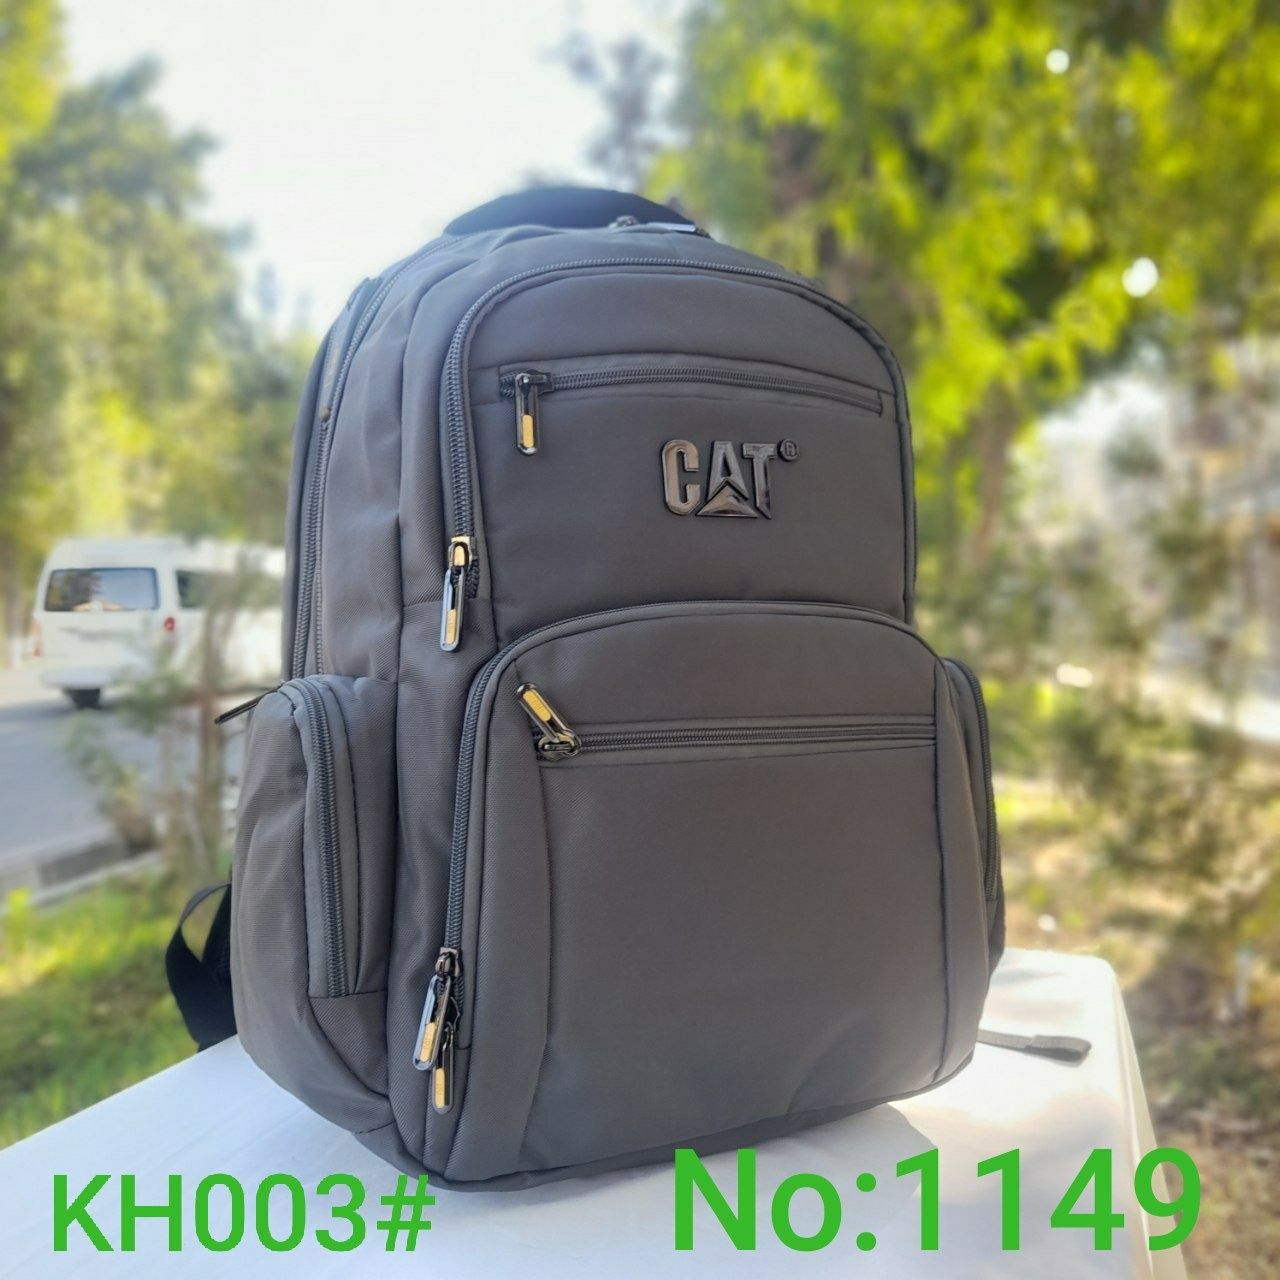 Рюкзак для ноутбука CAT ,KH303# No:1151